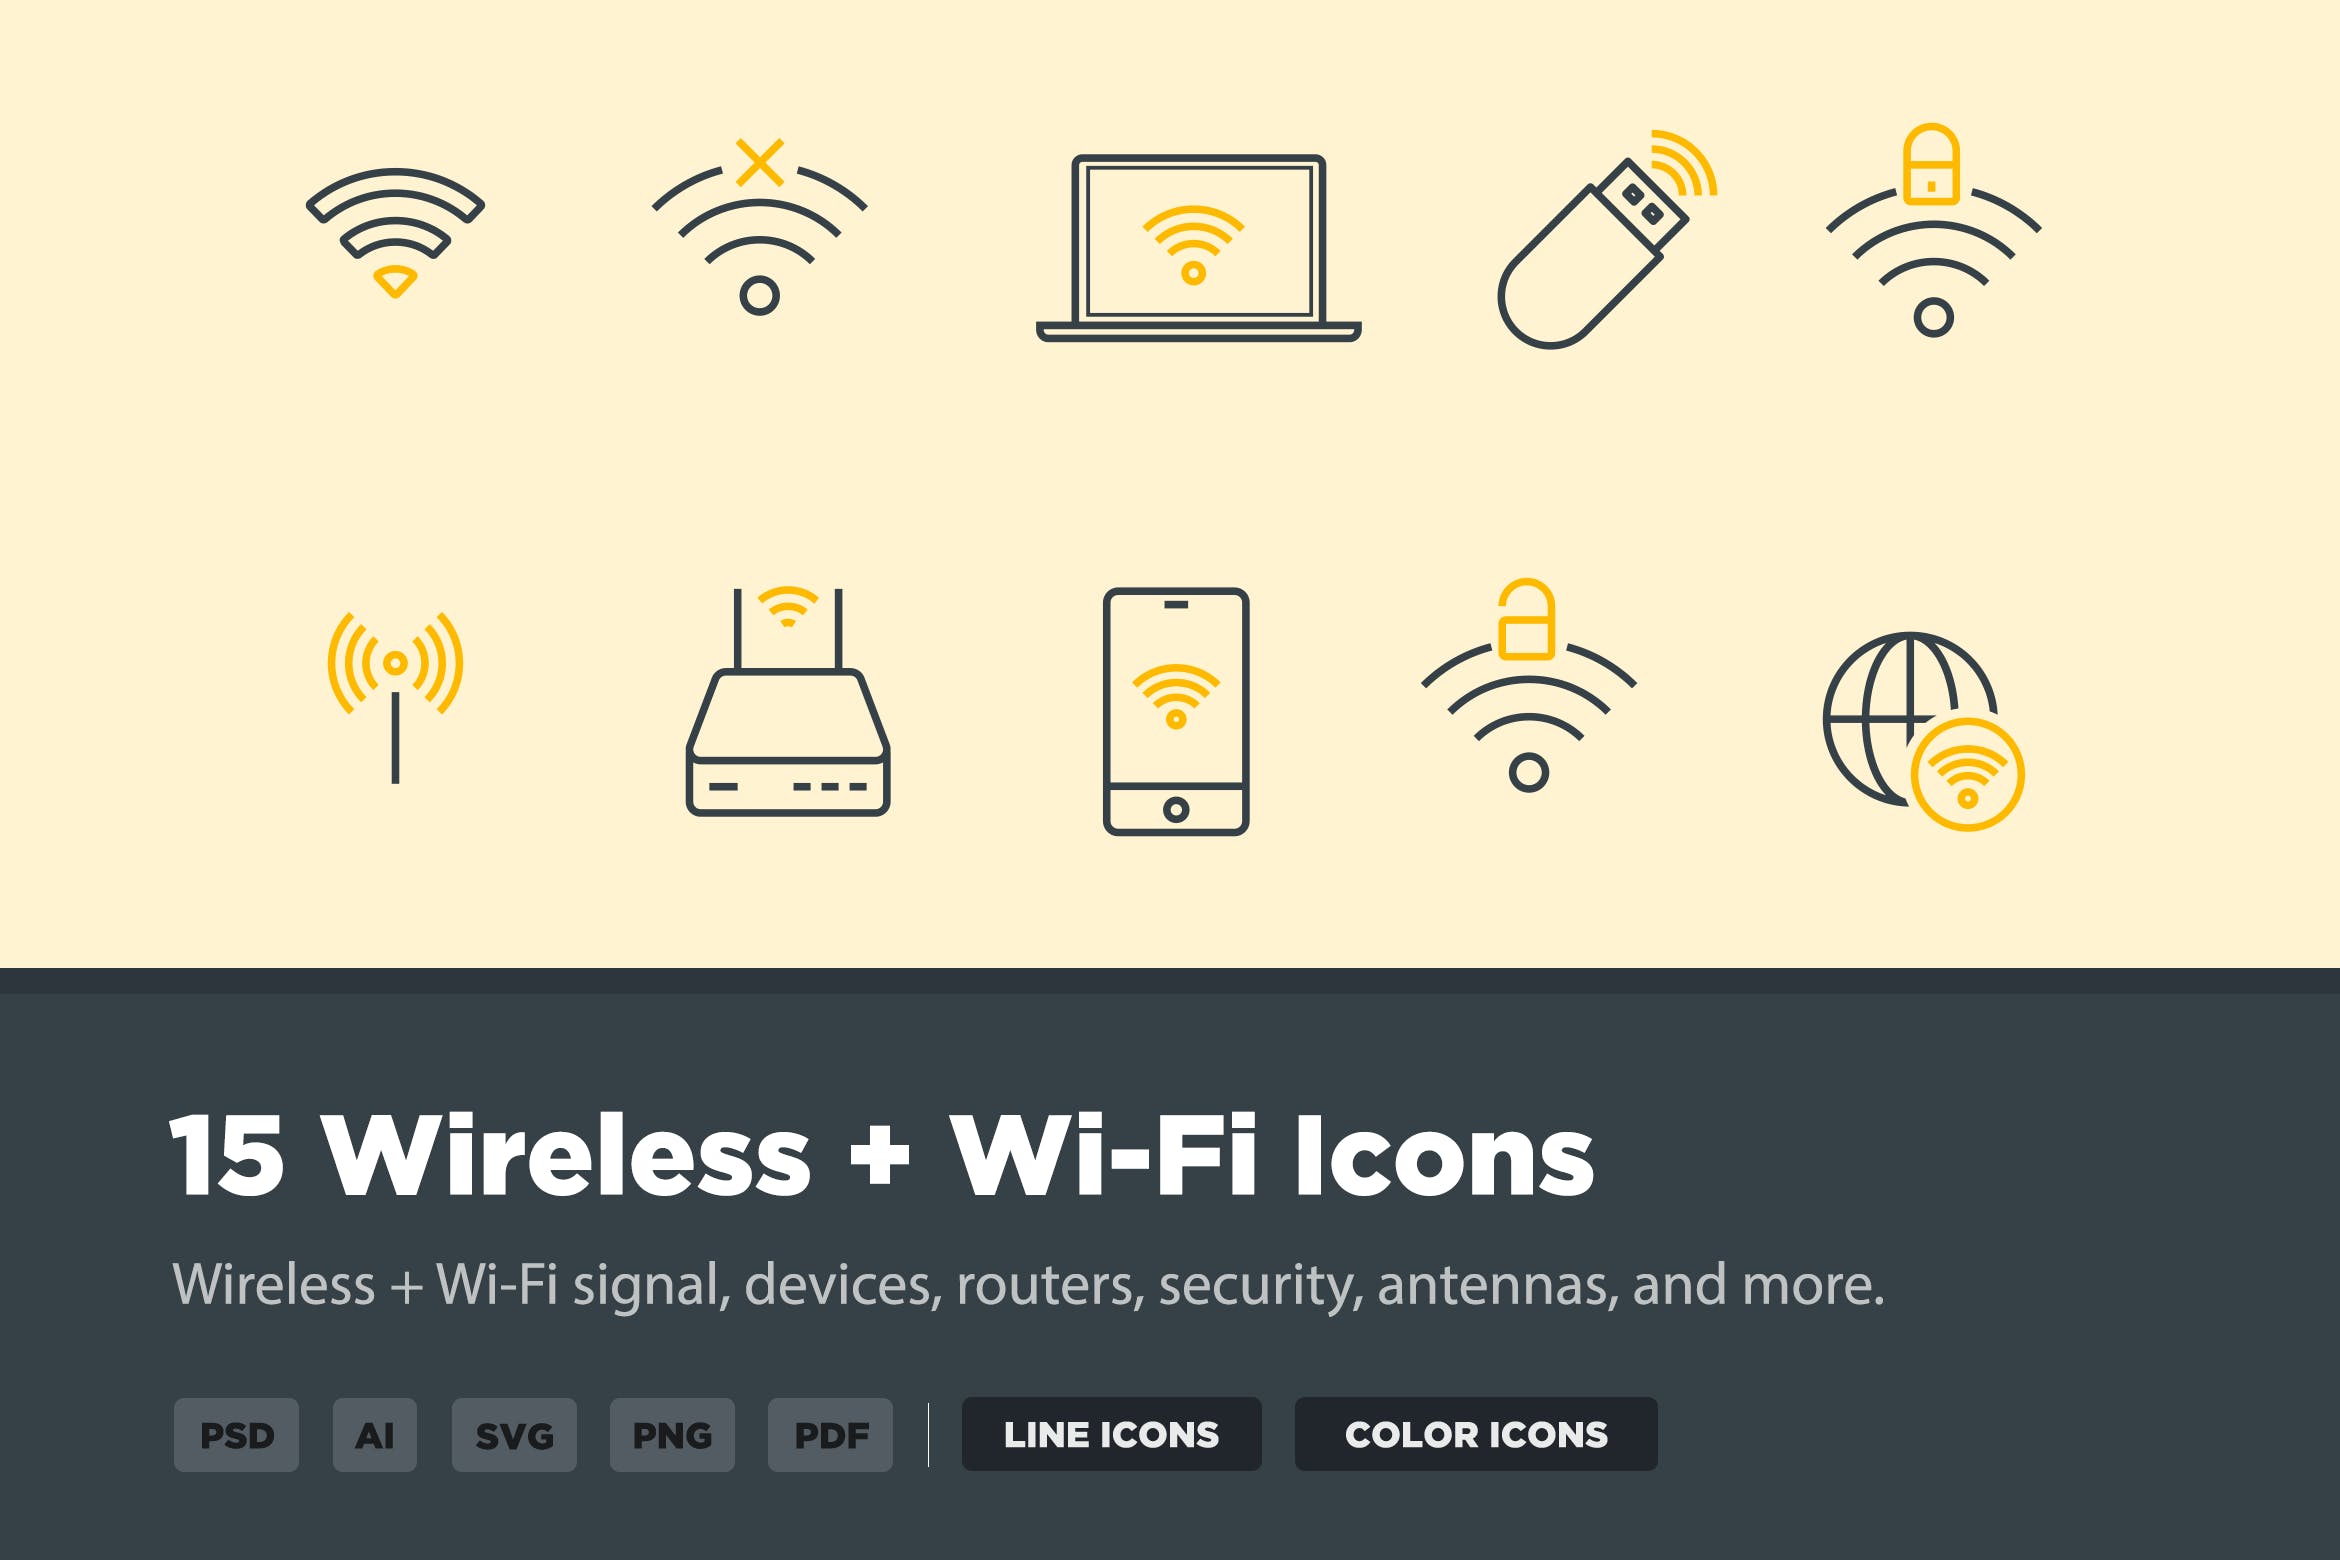 15枚无线网络&WIFI主题矢量蚂蚁素材精选图标 15 Wireless & Wi-Fi Icons插图